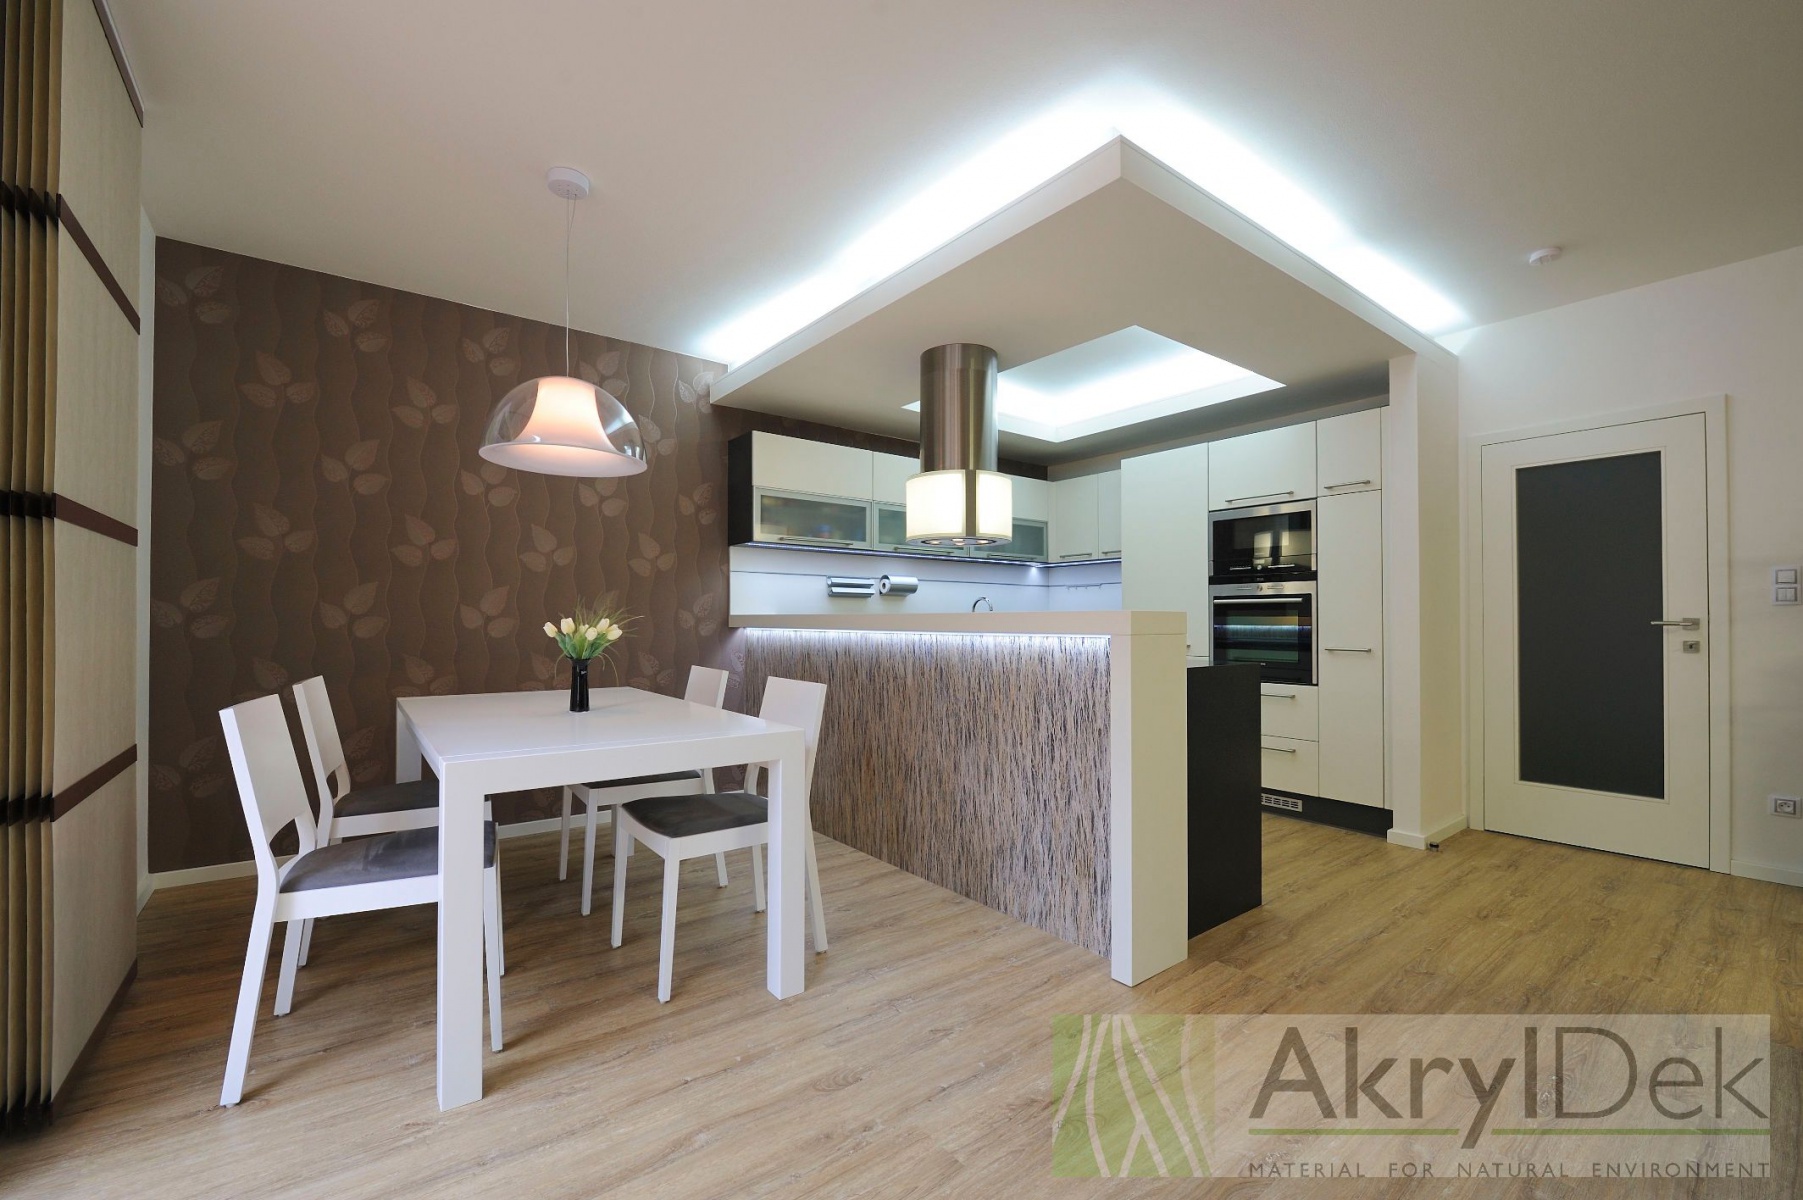 Moderní, bílá kuchyň s přírodními prvky - AkrylDek s.r.o.